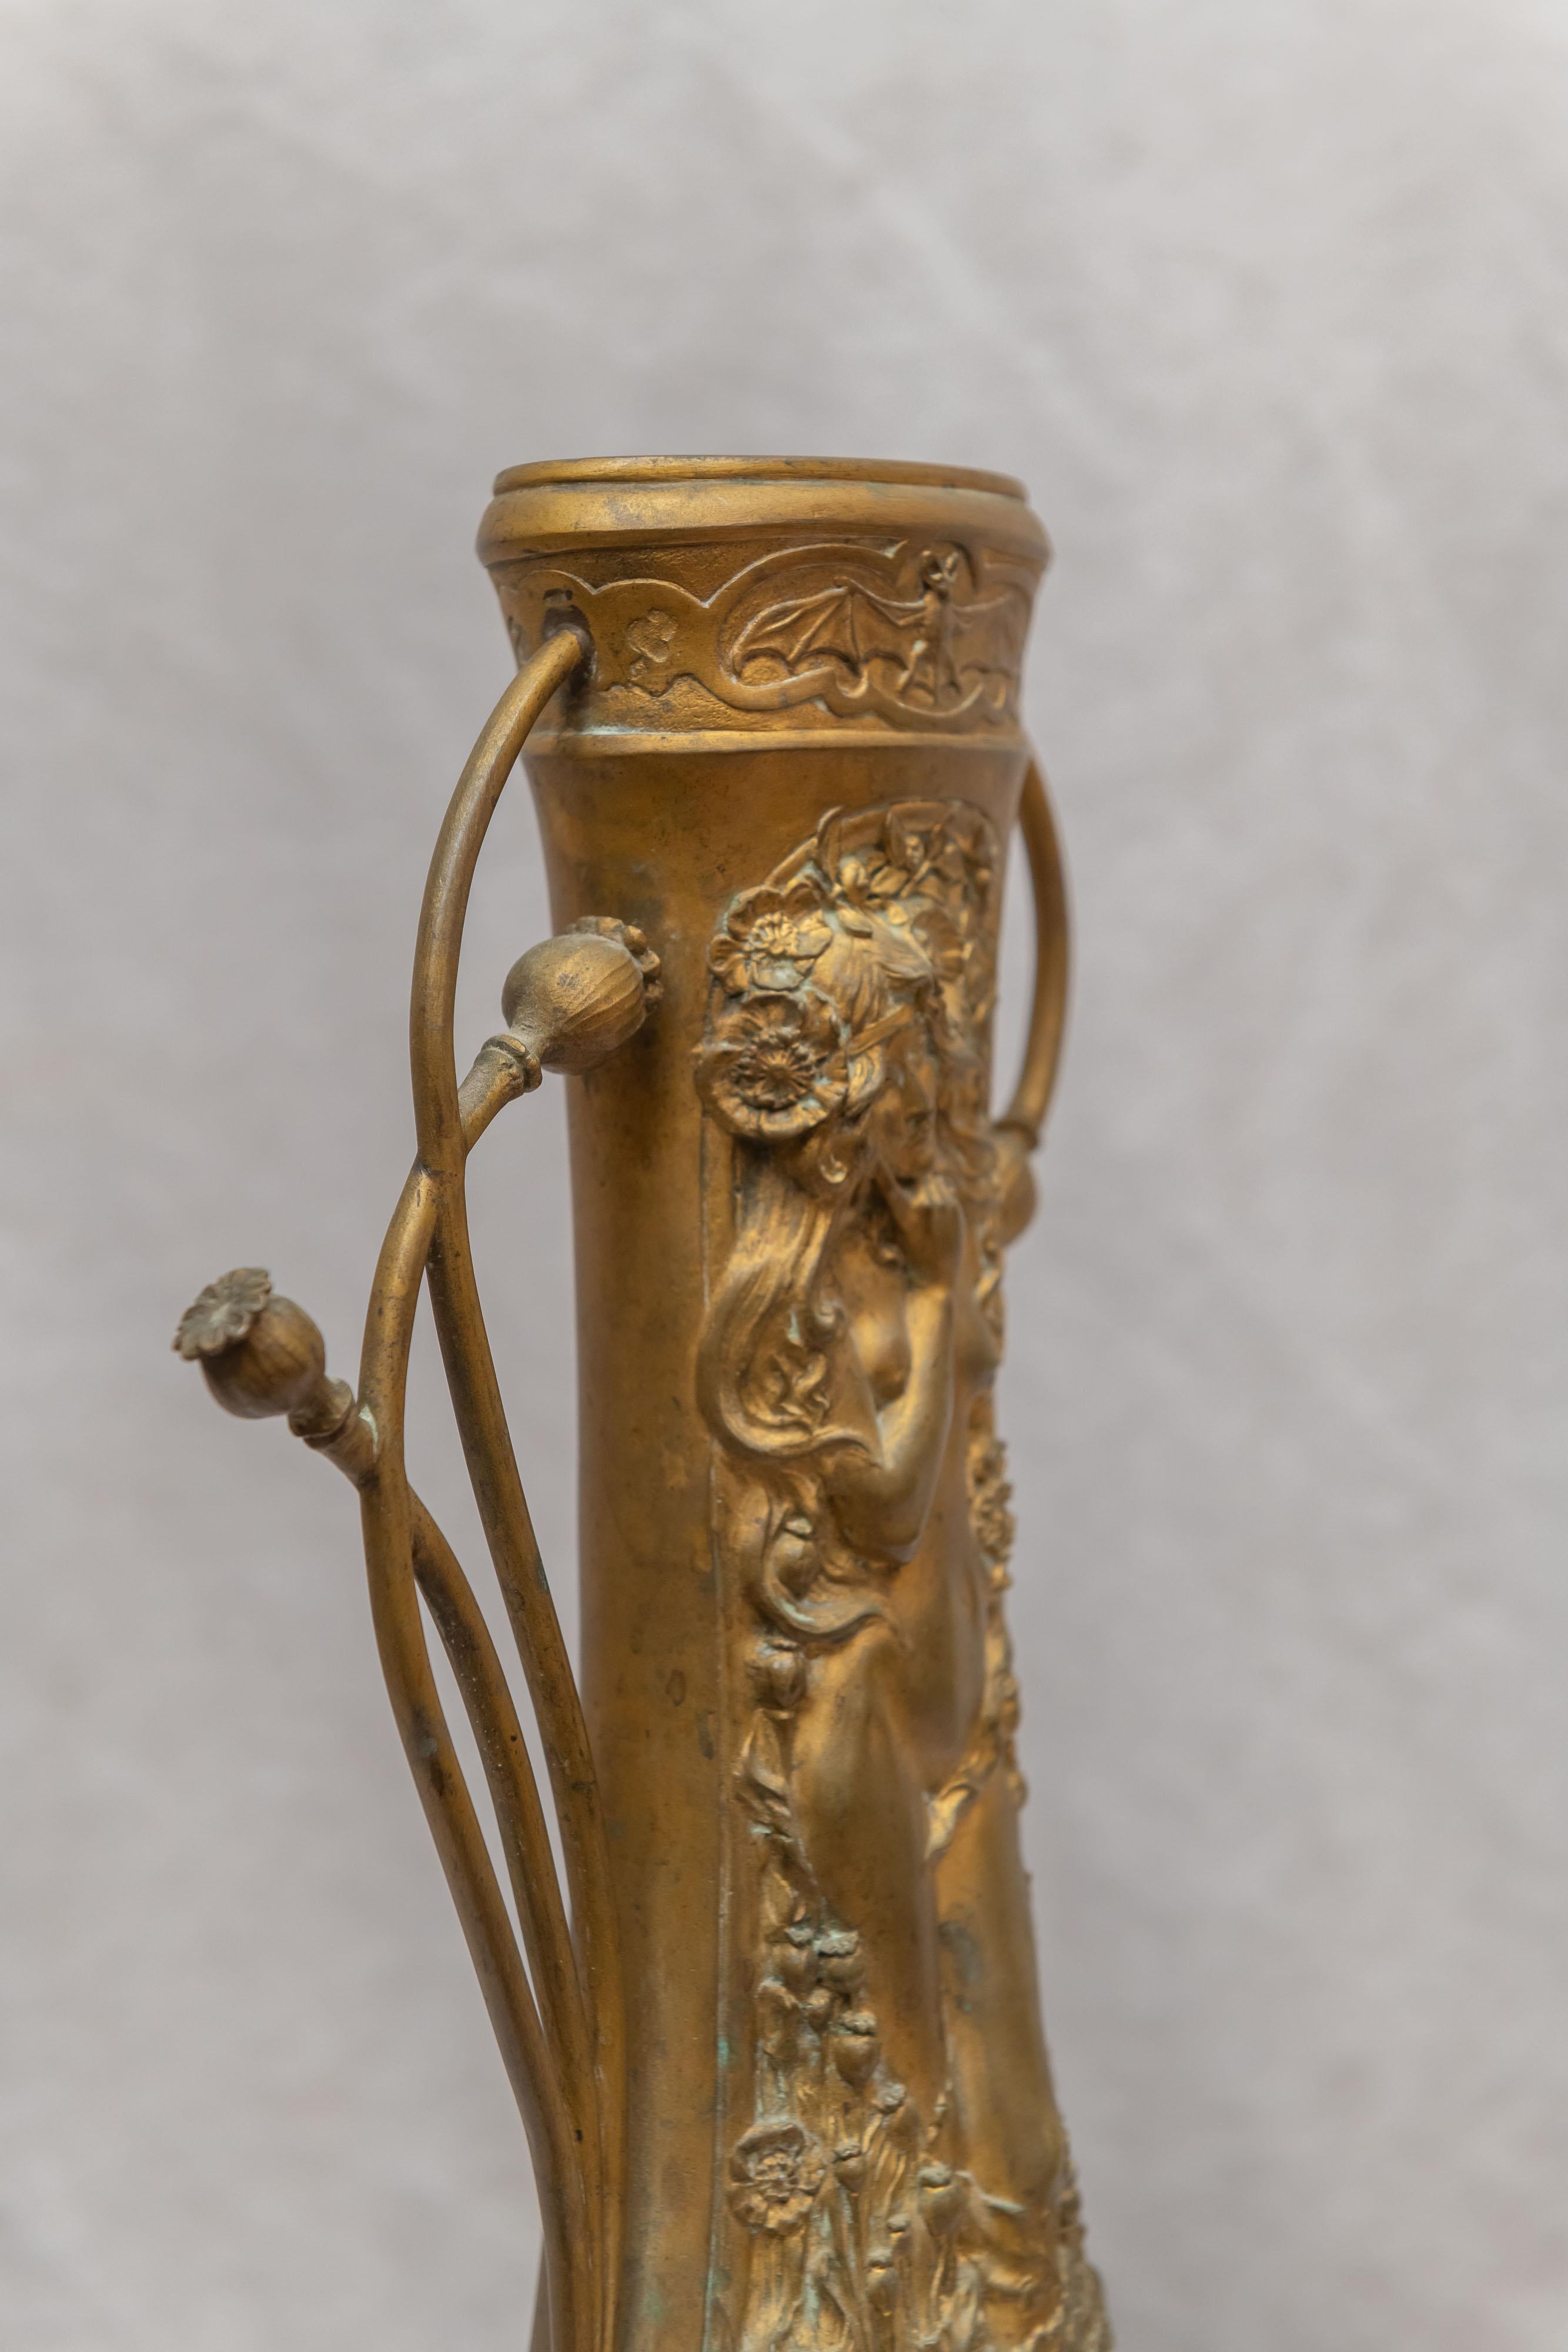 charles korschann/paul-françois louchet signed bronze mermaid vase